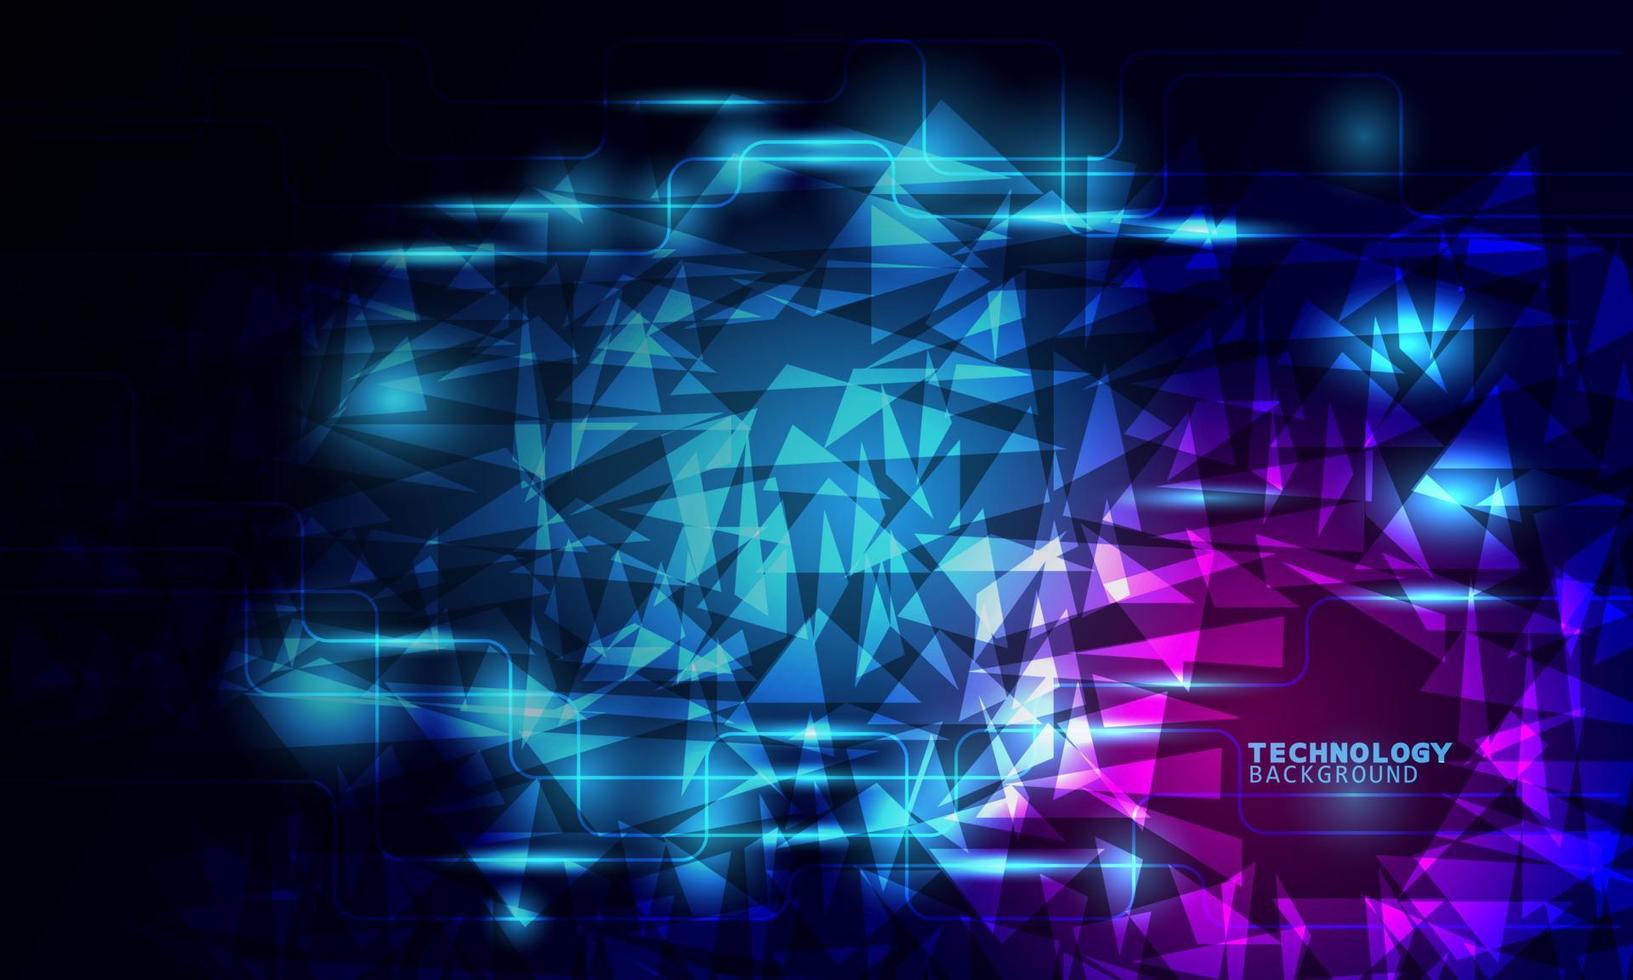 tecnologia de ilustração vetorial com triângulos sobre fundo azul e rosa escuro. vetor